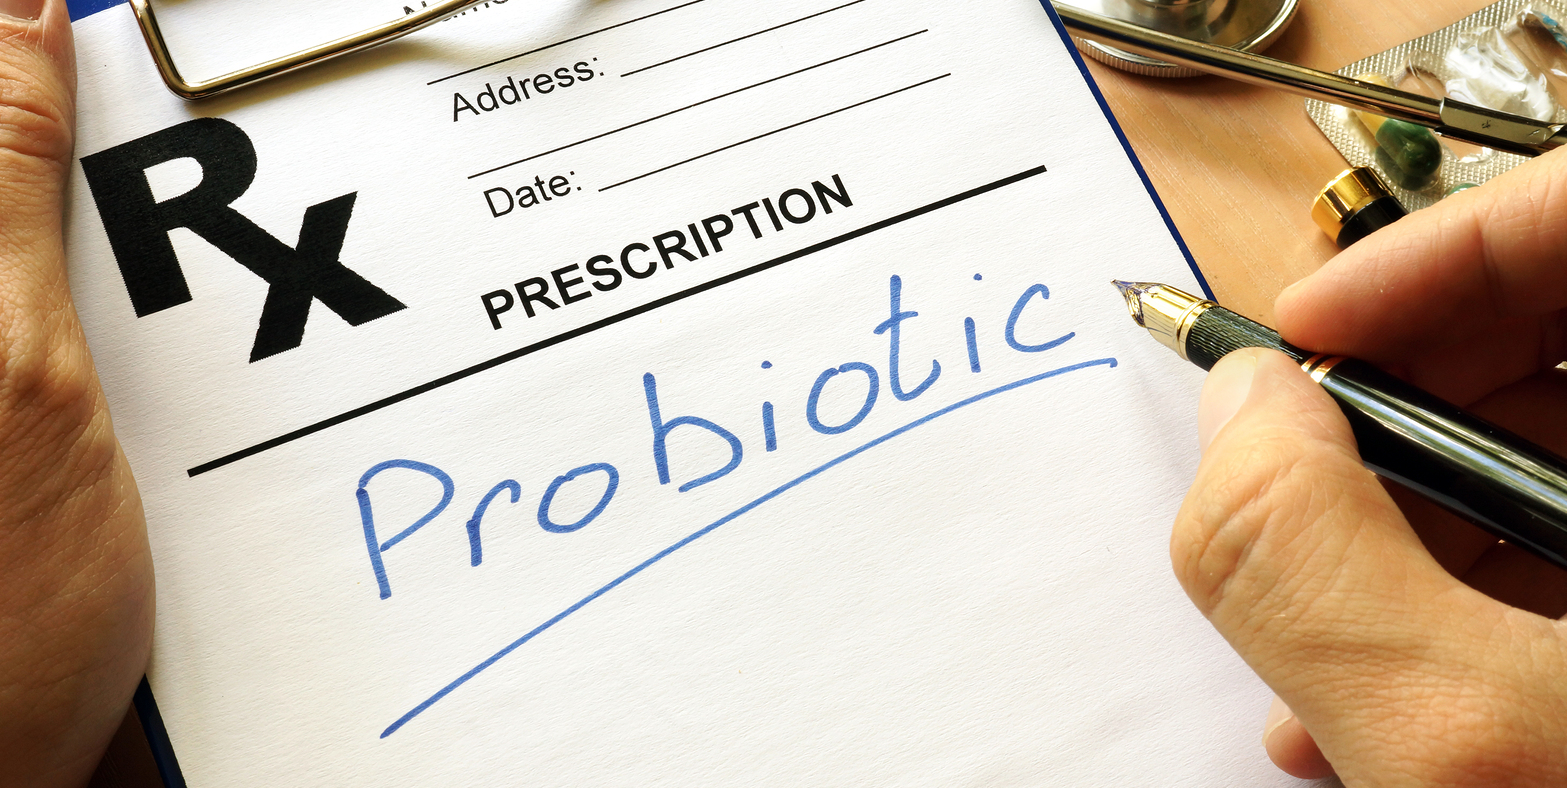 hogy a probiotikus baktériumok megnövelt bevitele jelentősen növeli a fogyókúra hatékonyságát